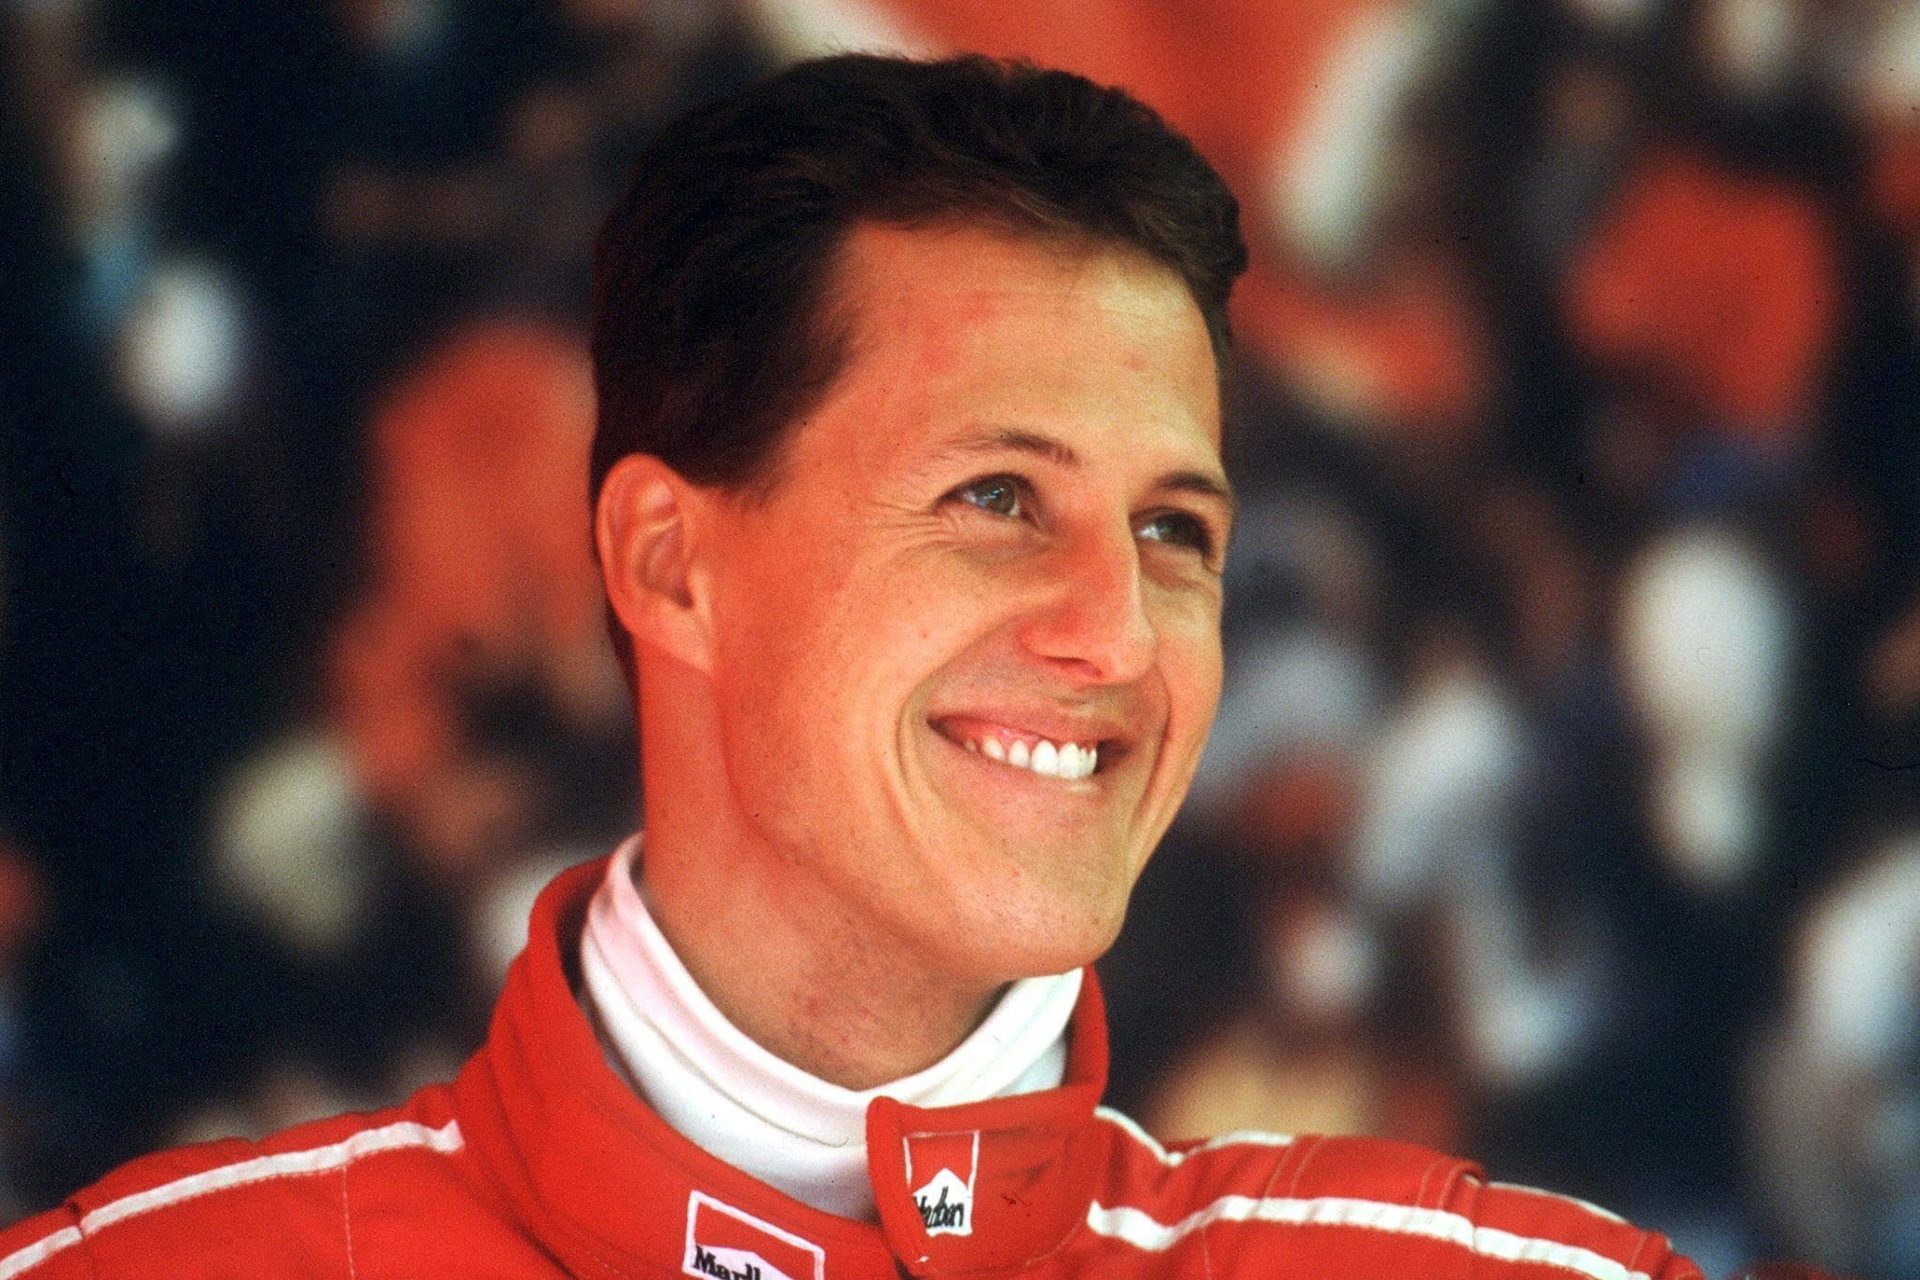 Hoe het ongeluk van Michael Schumacher zijn broer Ralf heeft veranderd